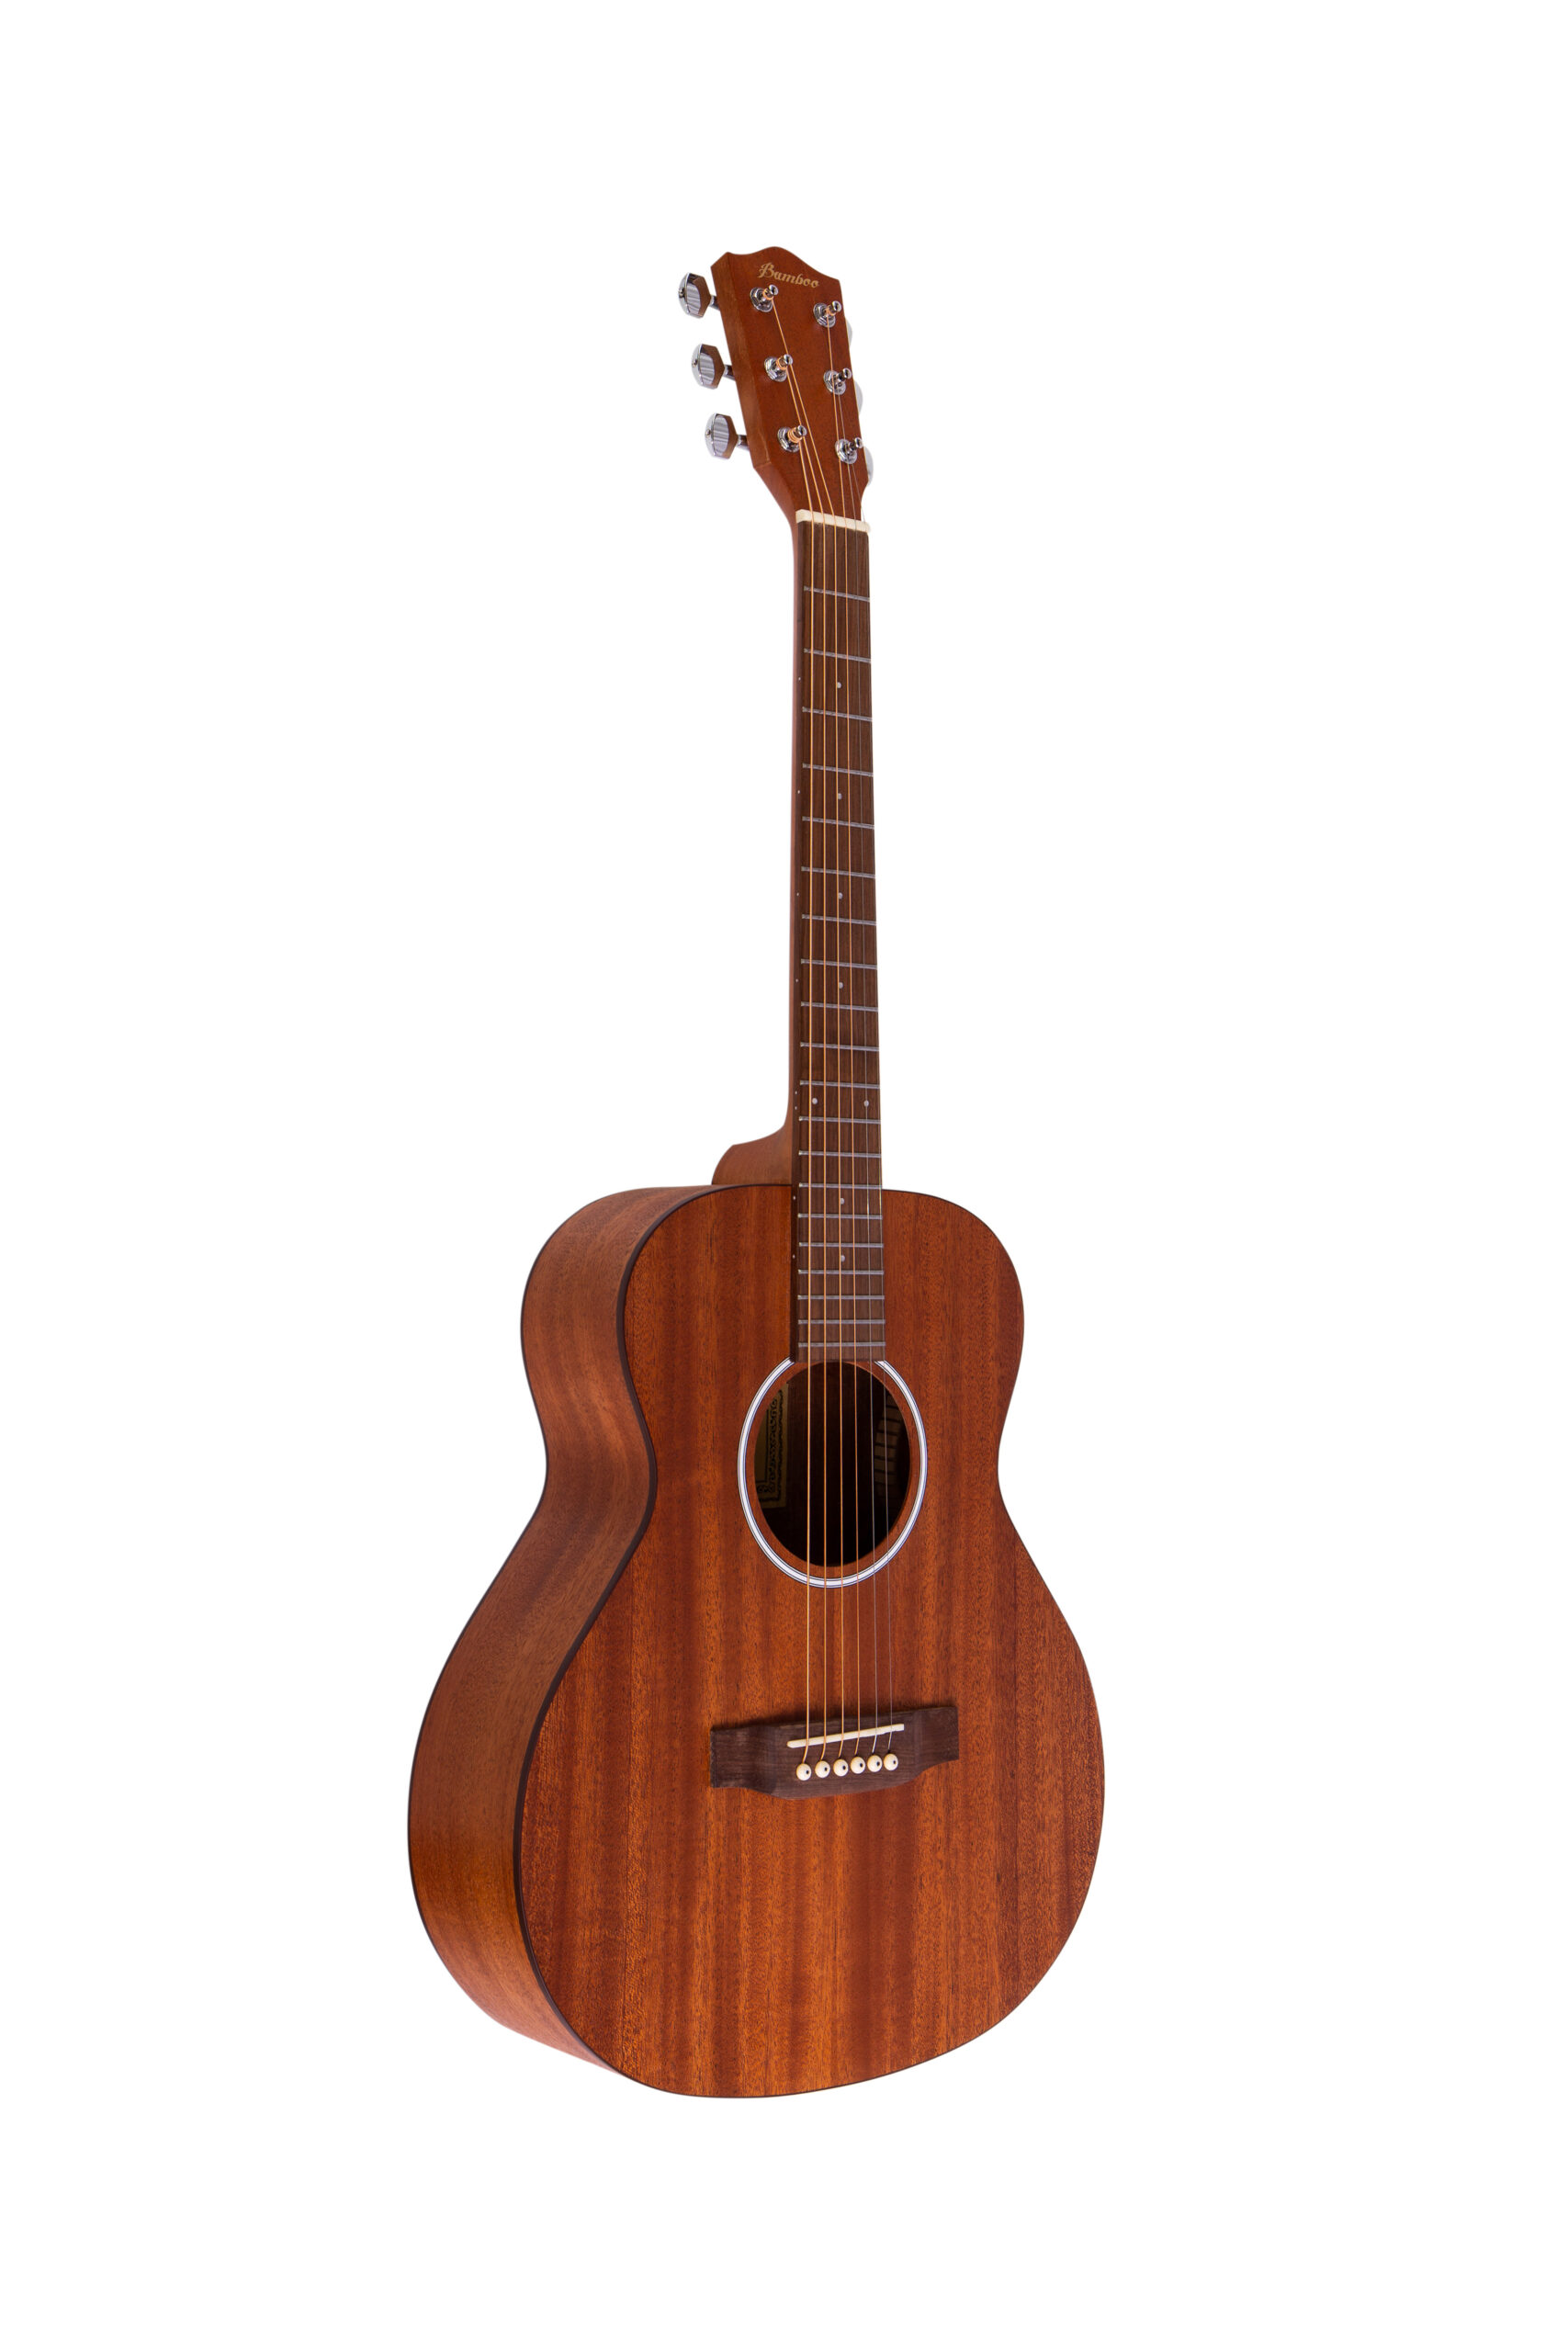 Акустические гитары Bamboo GA-38 Mahogany акустические гитары bamboo ga 38 mahogany